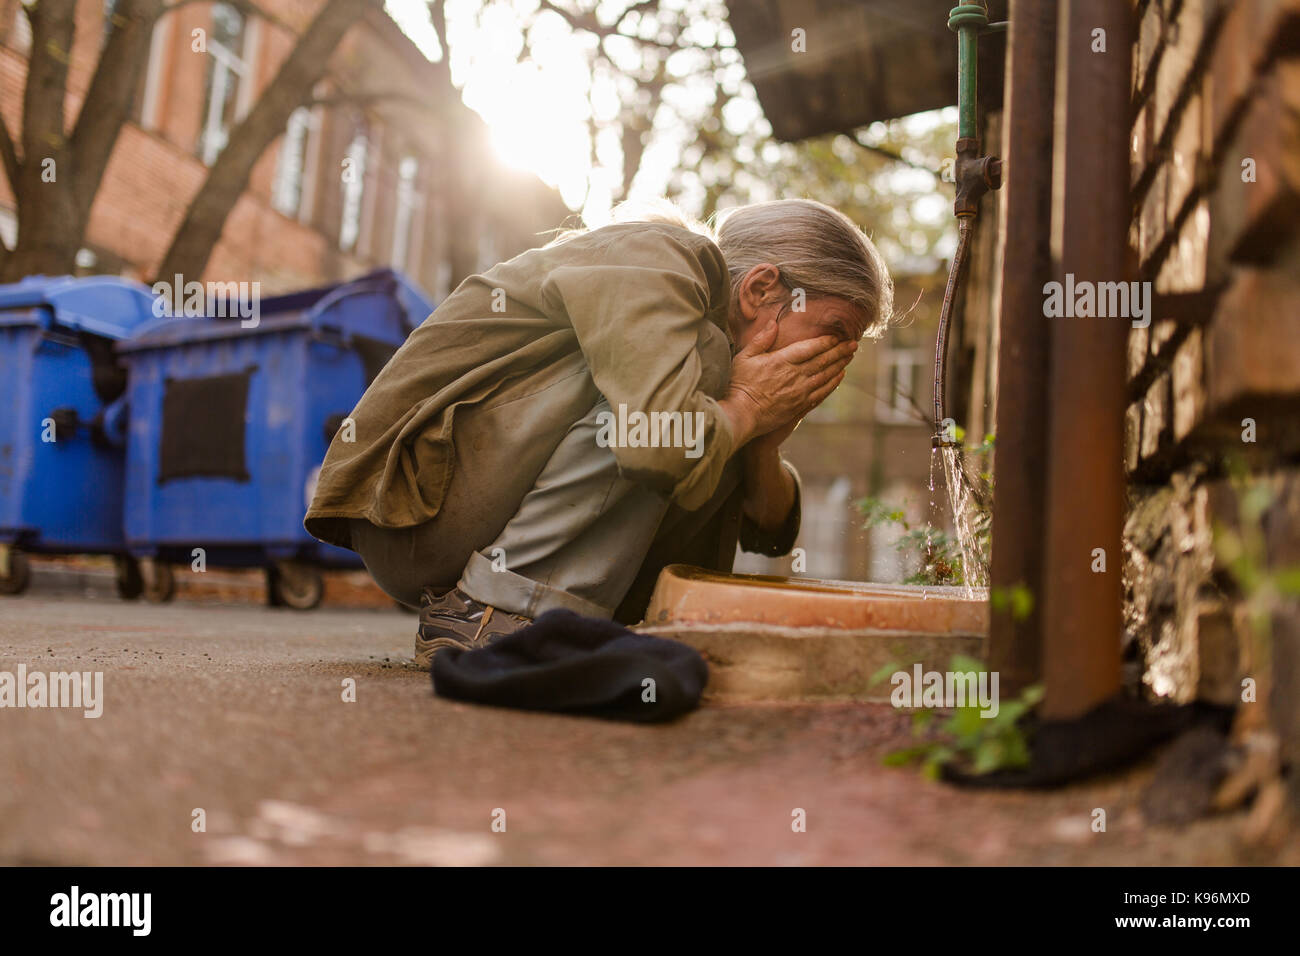 Das Leben auf der Straße, Obdachlosen squating Gesicht zu waschen. Stockfoto